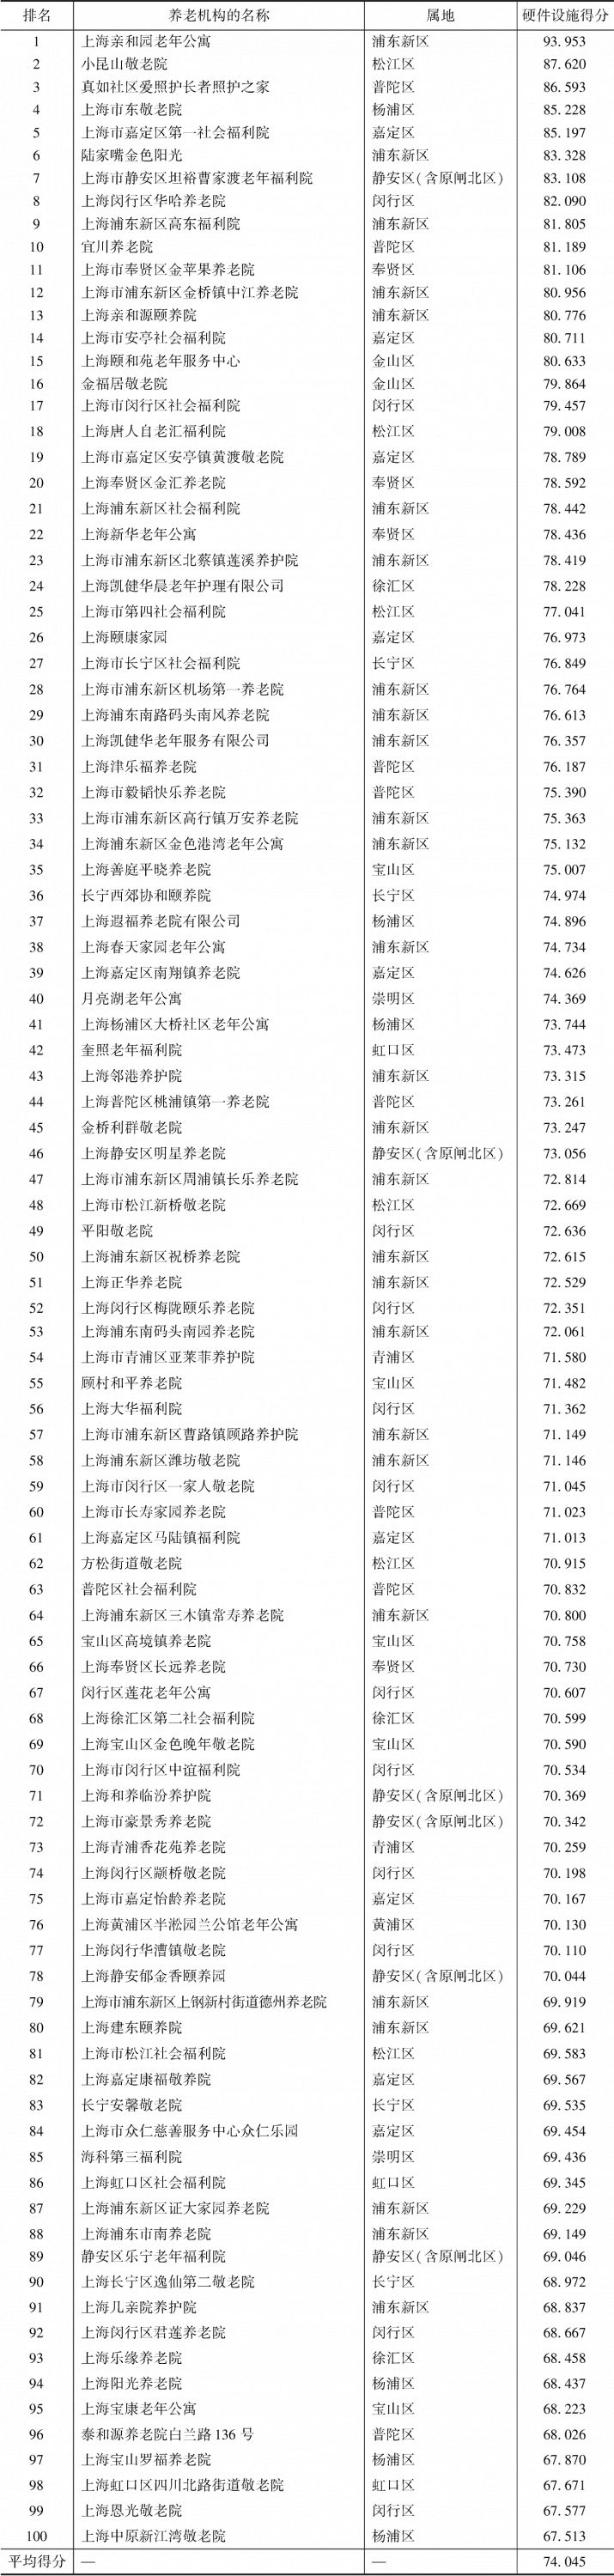 表4-6 上海市养老机构硬件设施单项100强排名以及得分